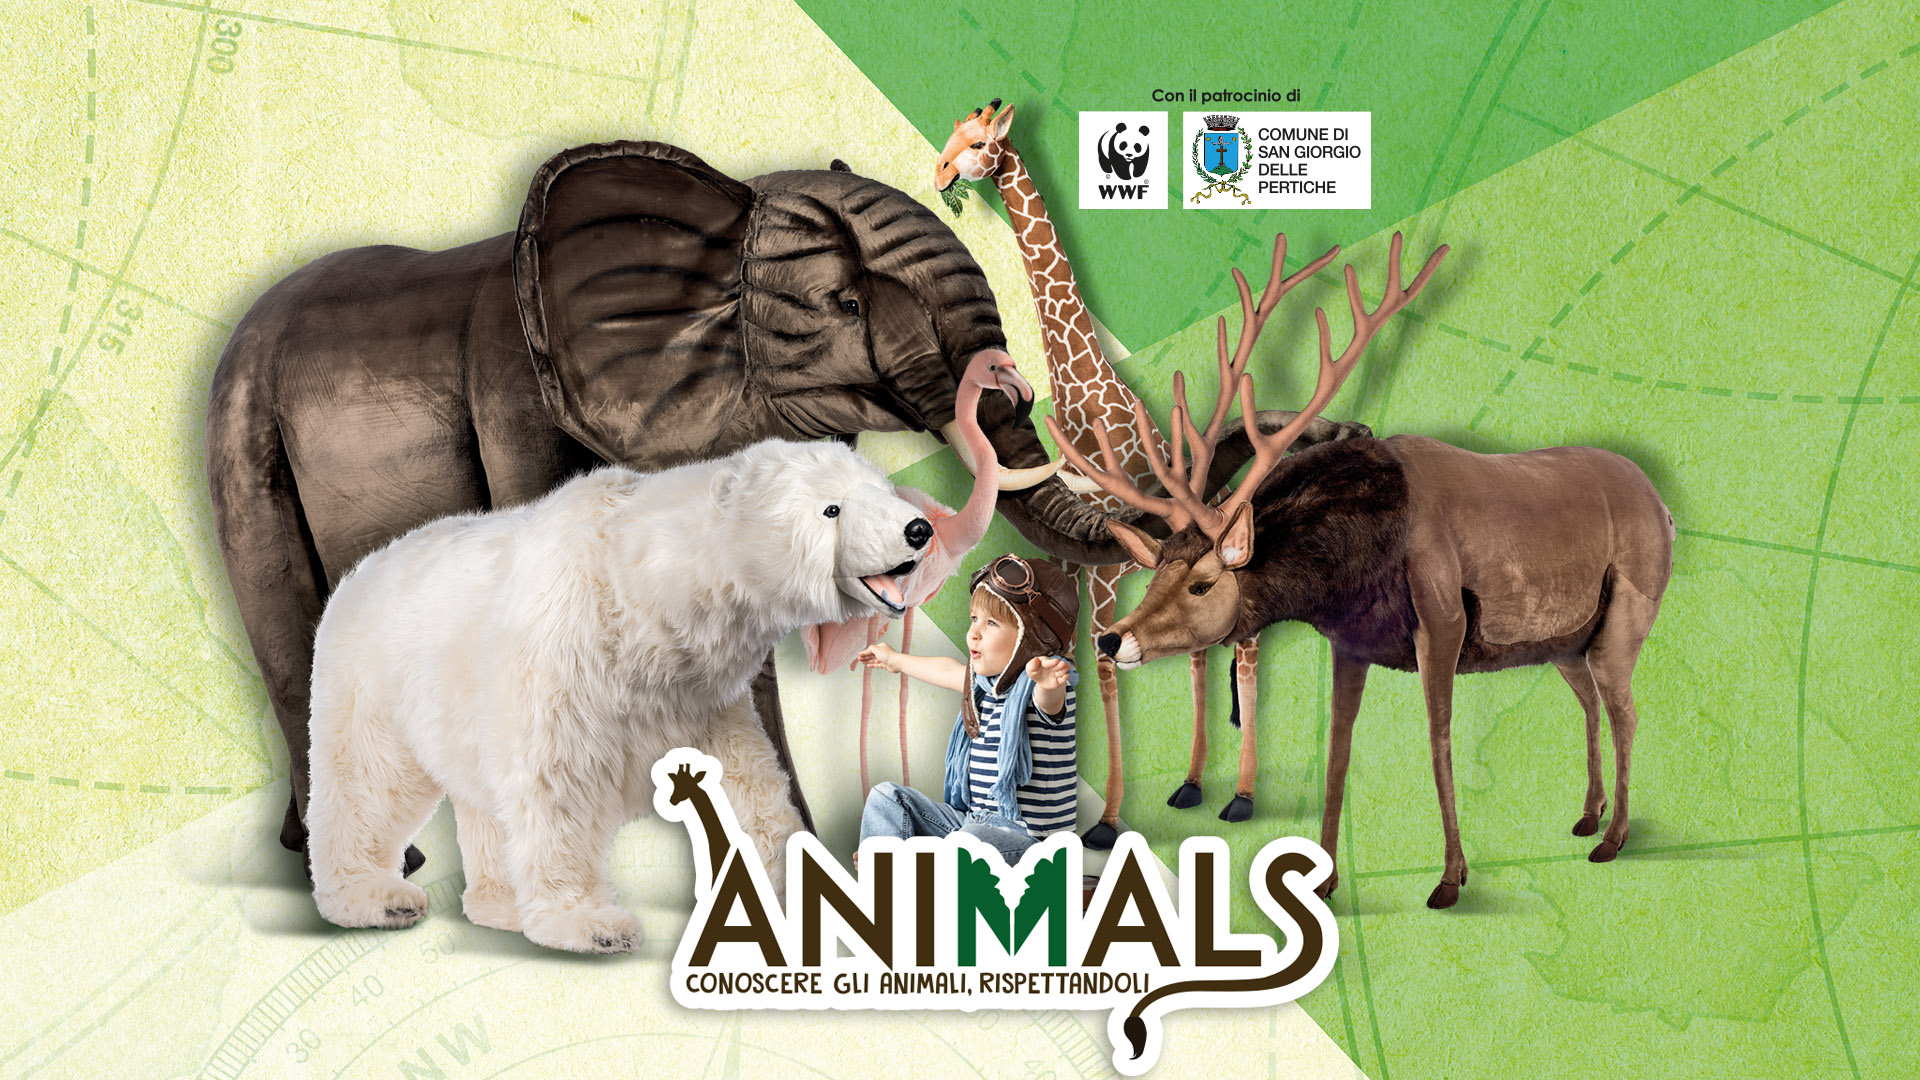 Mostra evento "Animals - conoscere gli animali, rispettandoli